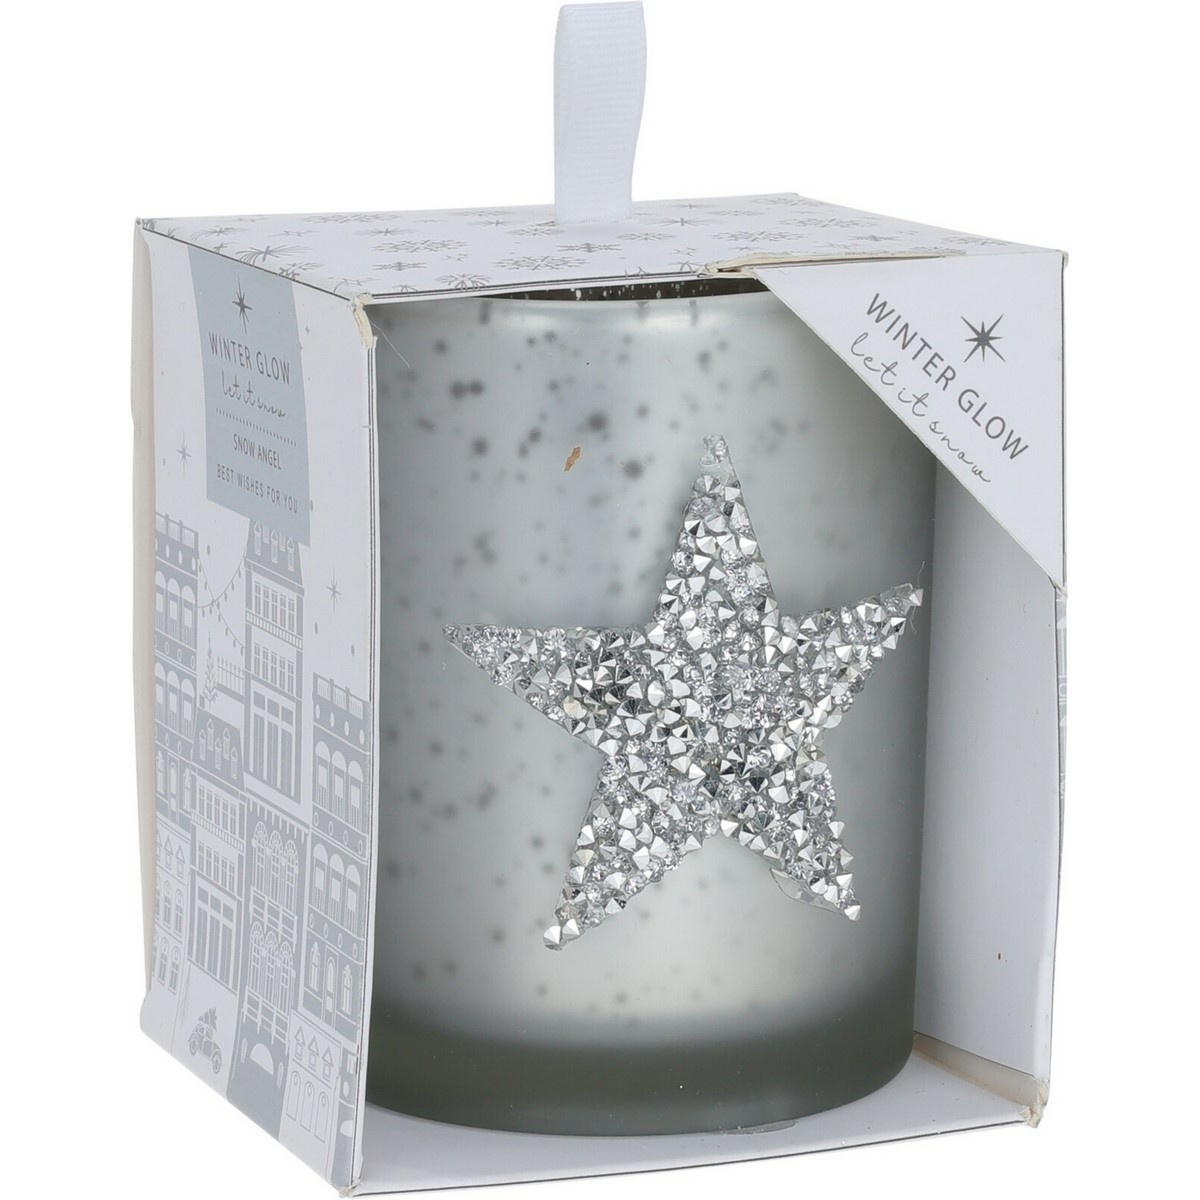 Star karácsonyi dekorgyertya, 8 x 10 cm, ezüst